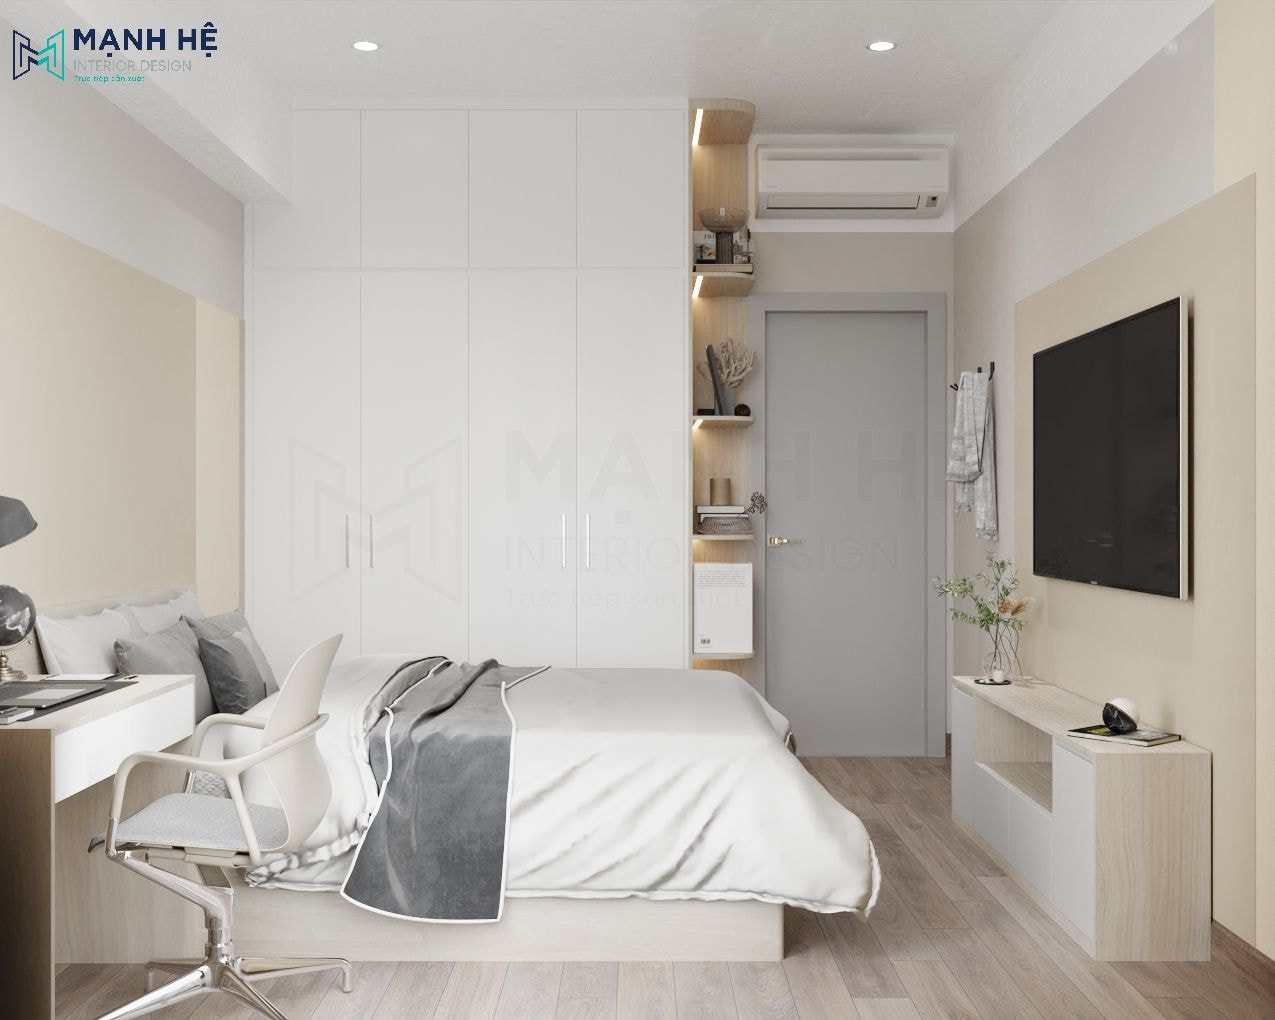 Thiết kế phòng ngủ nhỏ với tủ quần áo gỗ công nghiệp cao đụng trần tối ưu không gian lưu trữ